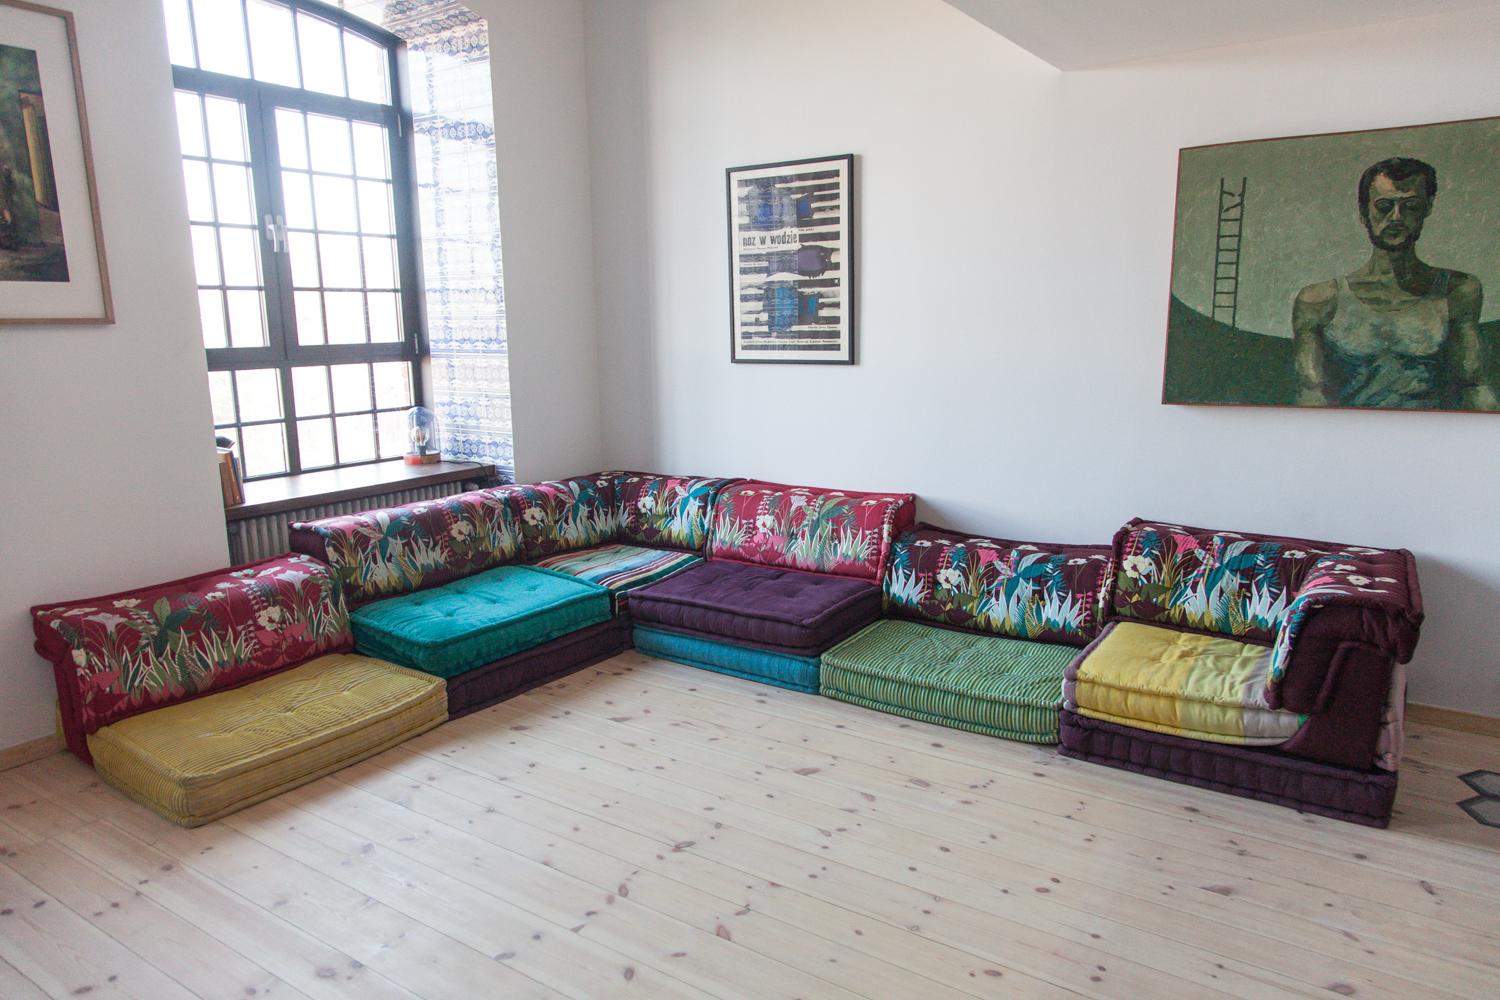 1971 entwarf Hans Hopfer das Mah Jong Lounge Sofa, das bekannteste und ikonischste Design von Roche Bobois. Die Freiheit der Form A, die dieses vollständig modulare niedrige Sitzsystem ermöglicht, sprengt die Grenzen des Designs und fördert eine